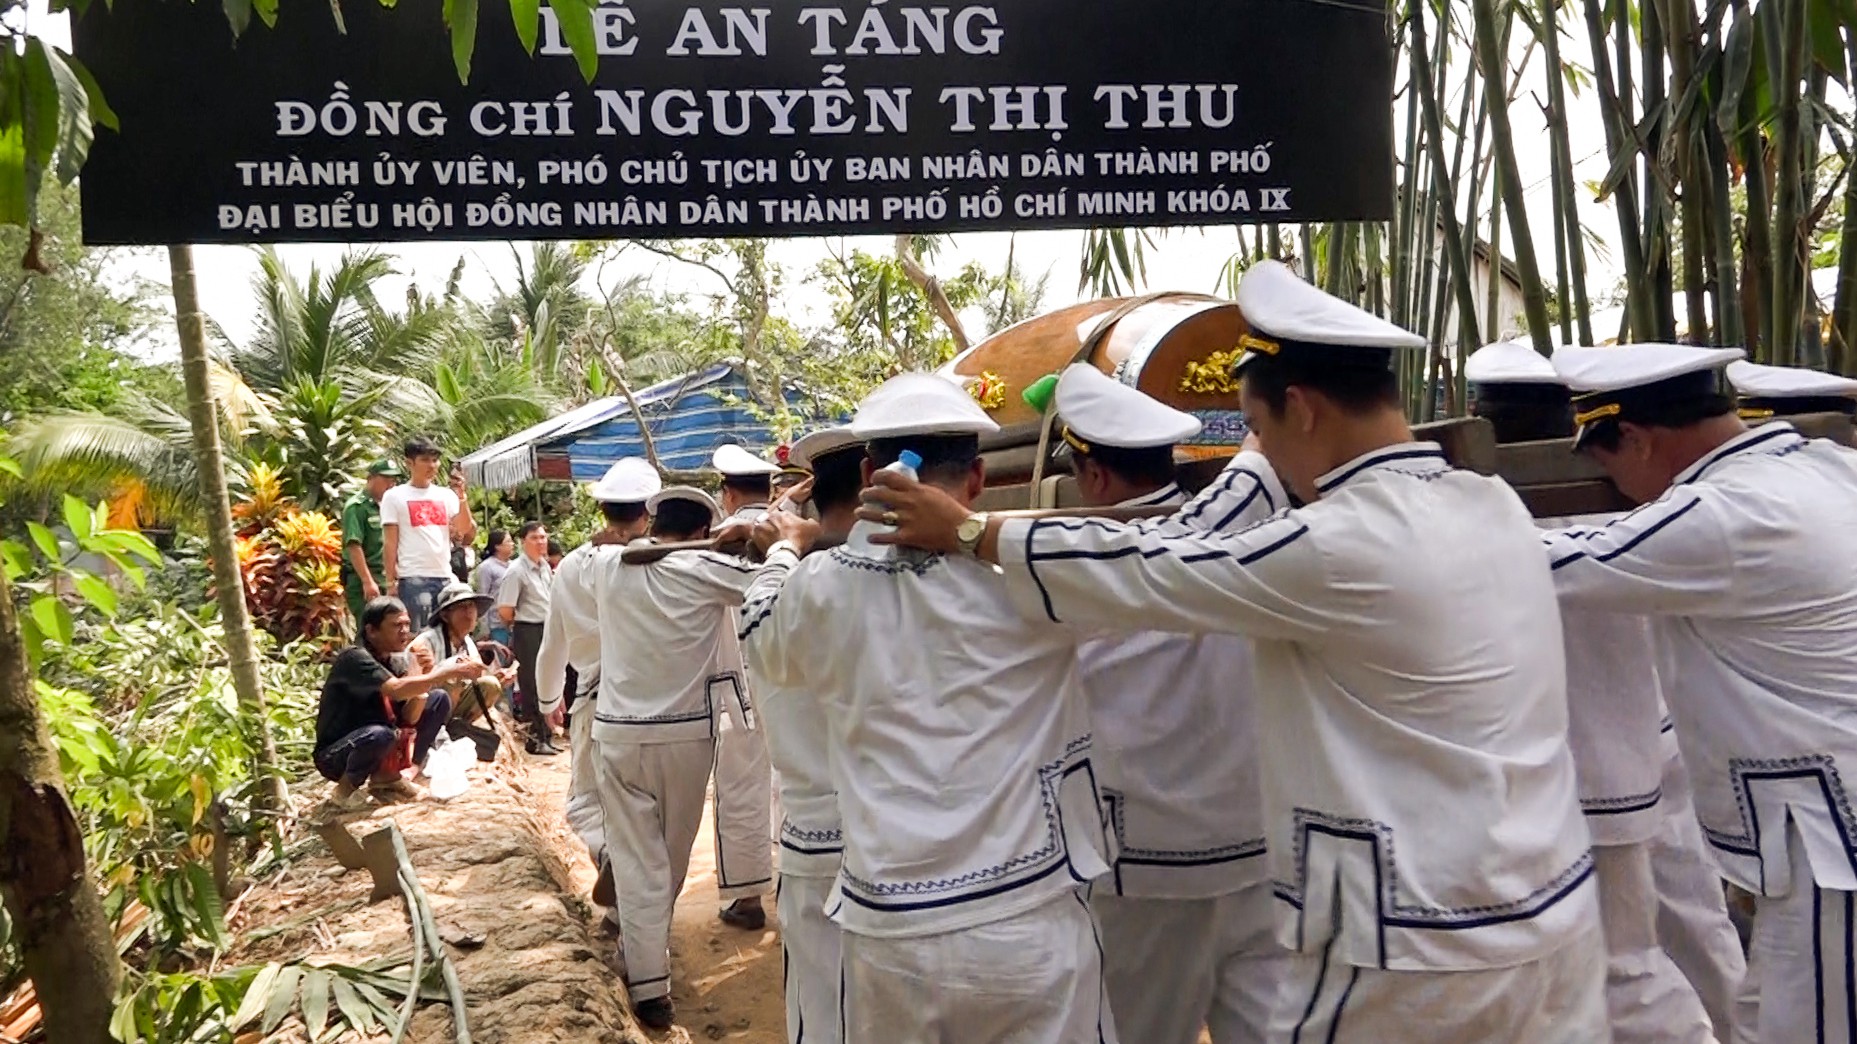 Phó Chủ tịch UBND TP HCM Nguyễn Thị Thu đã yên nghỉ nơi quê nhà - Ảnh 21.